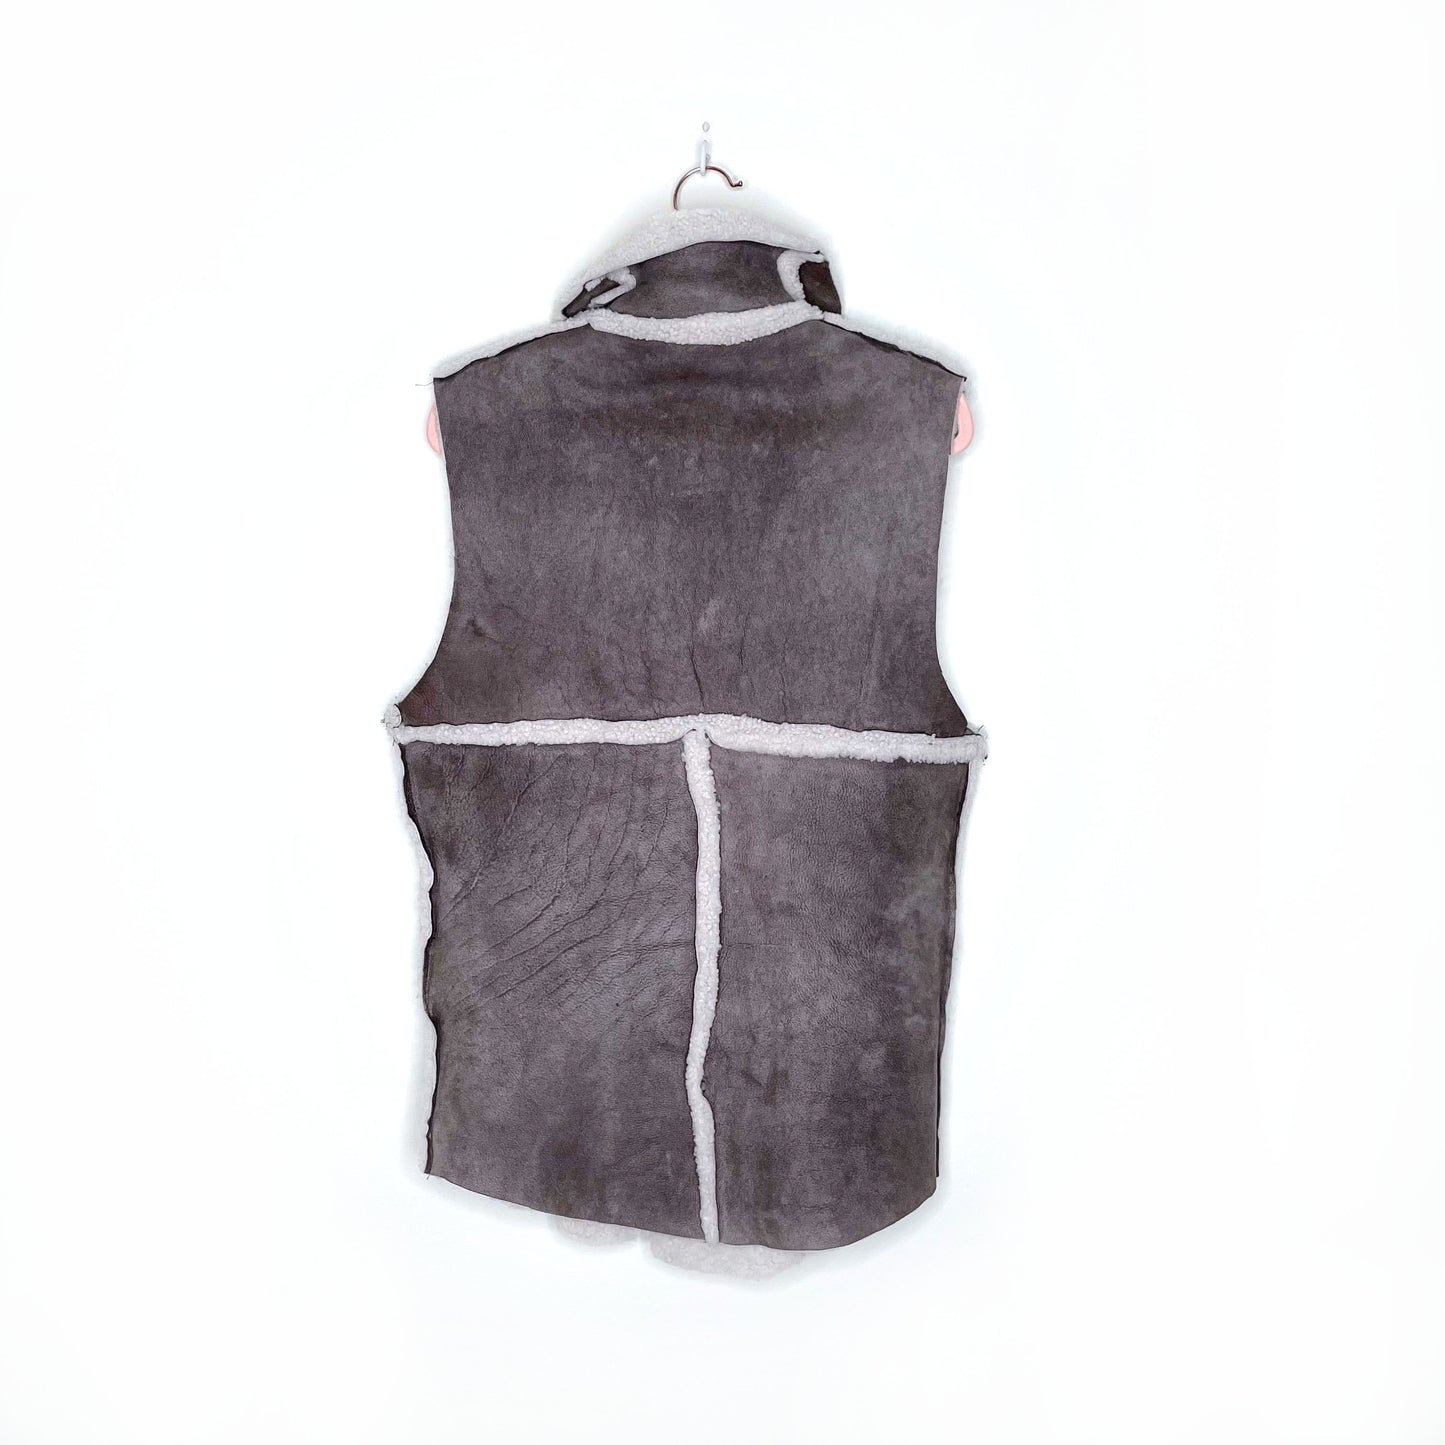 vintage handmade sheepskin vest - size sm/med